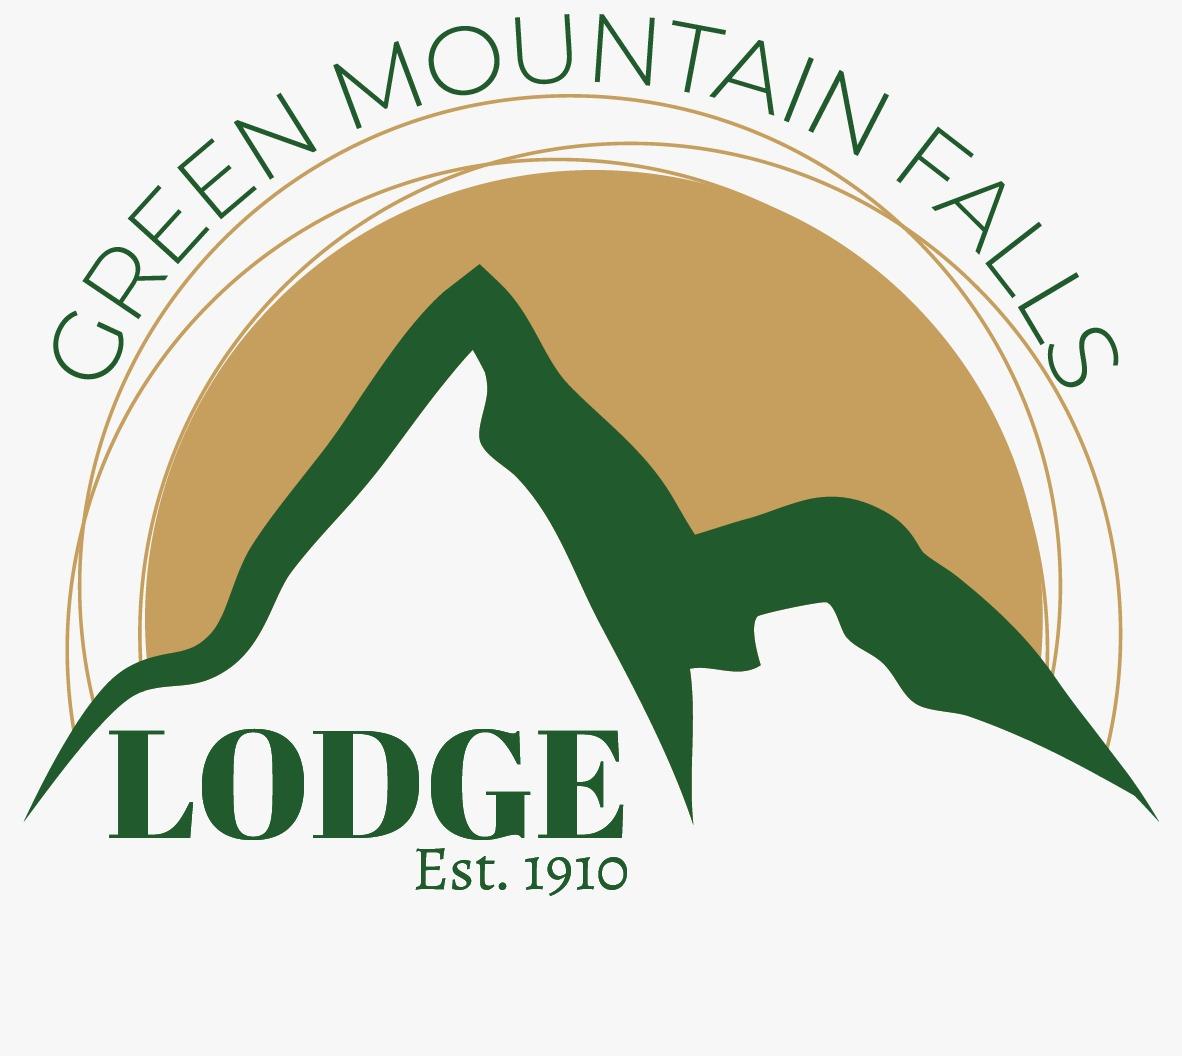 The Green Mountain Falls Lodge